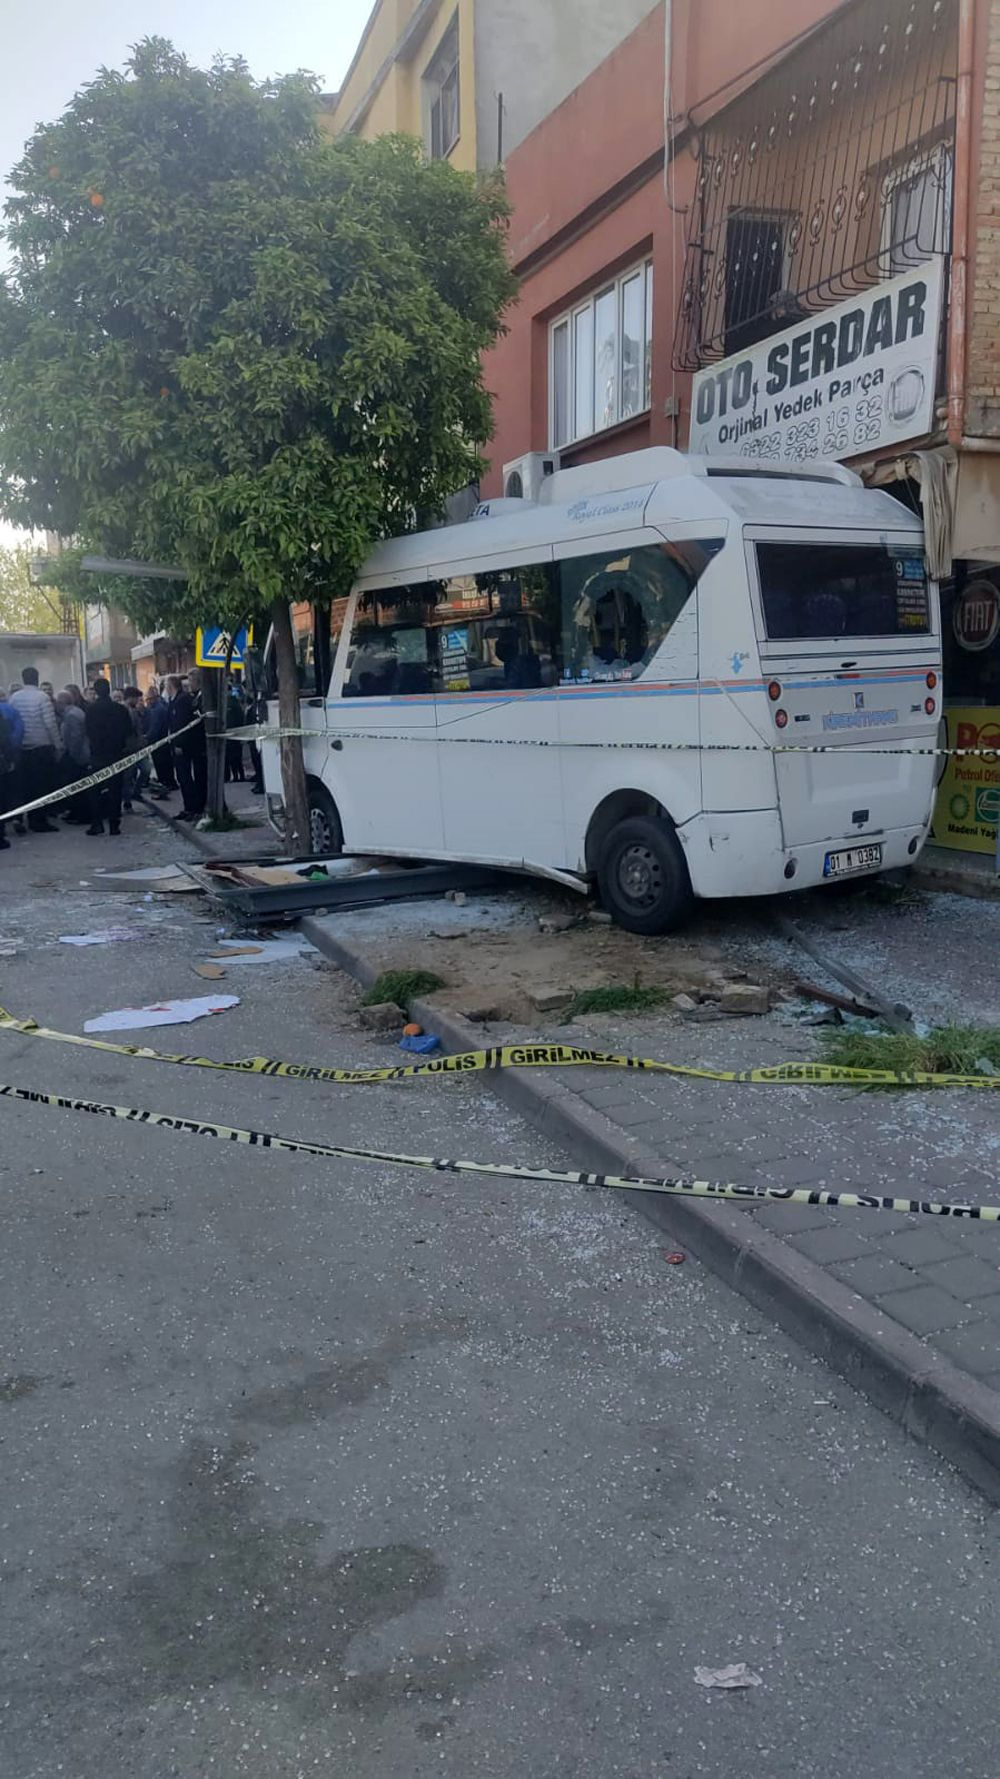 Adana'da korkunç kaza! Dolmuş durakta bekleyenleri ezdi ölü ve yaralılar var